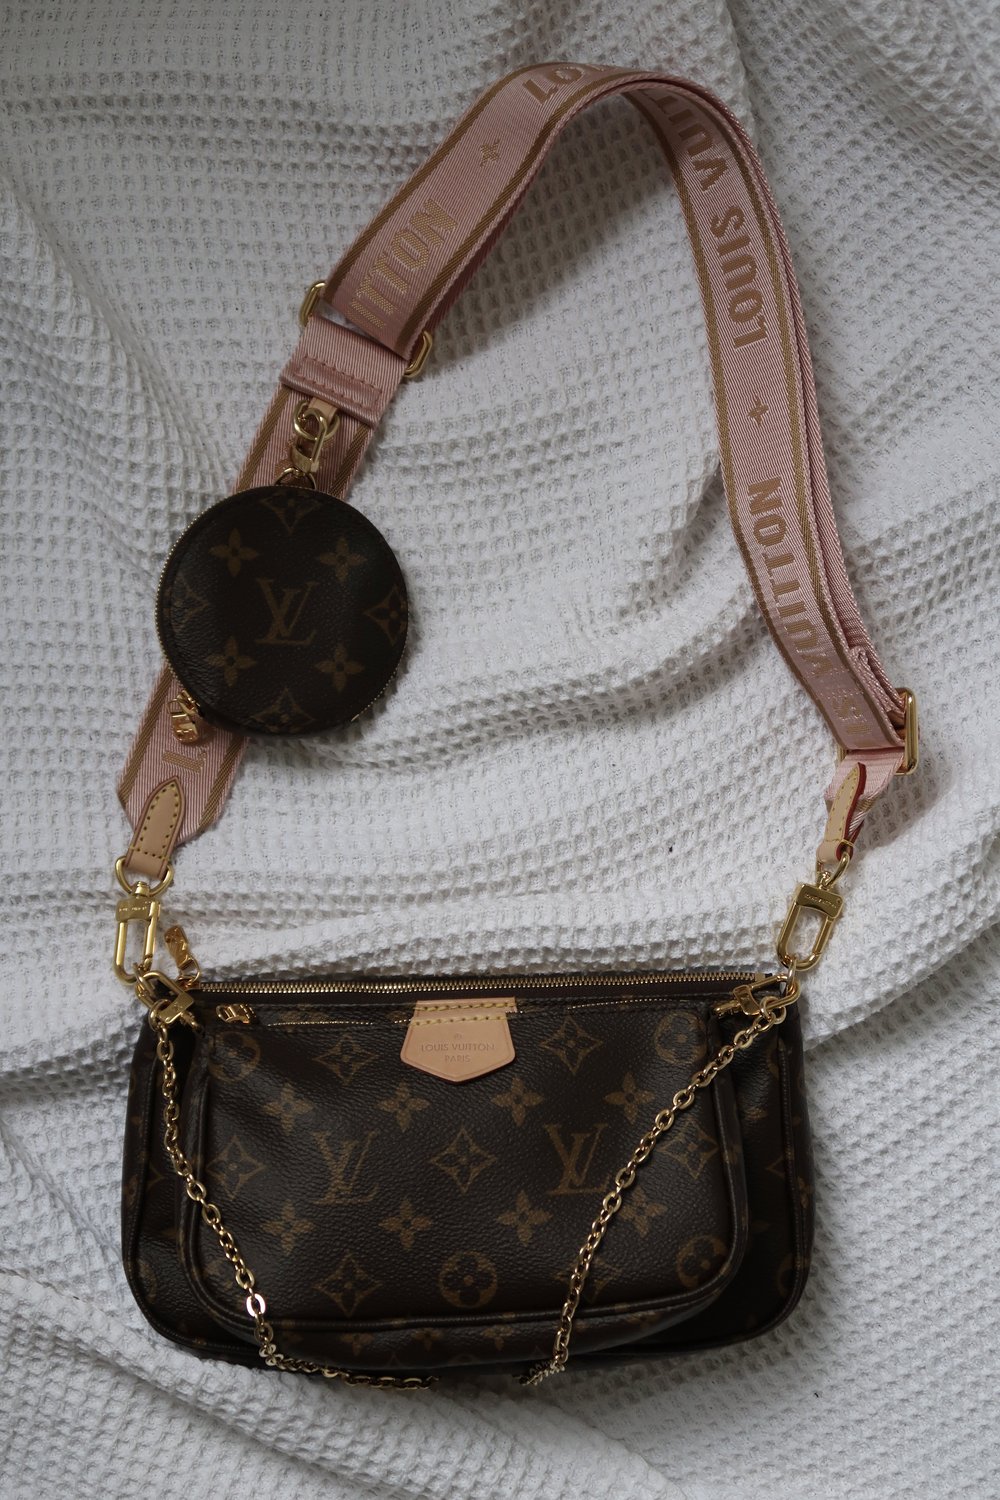 Louis Vuitton LV Multi Pochette Accessoires Crossbody Bag. 3 Bags